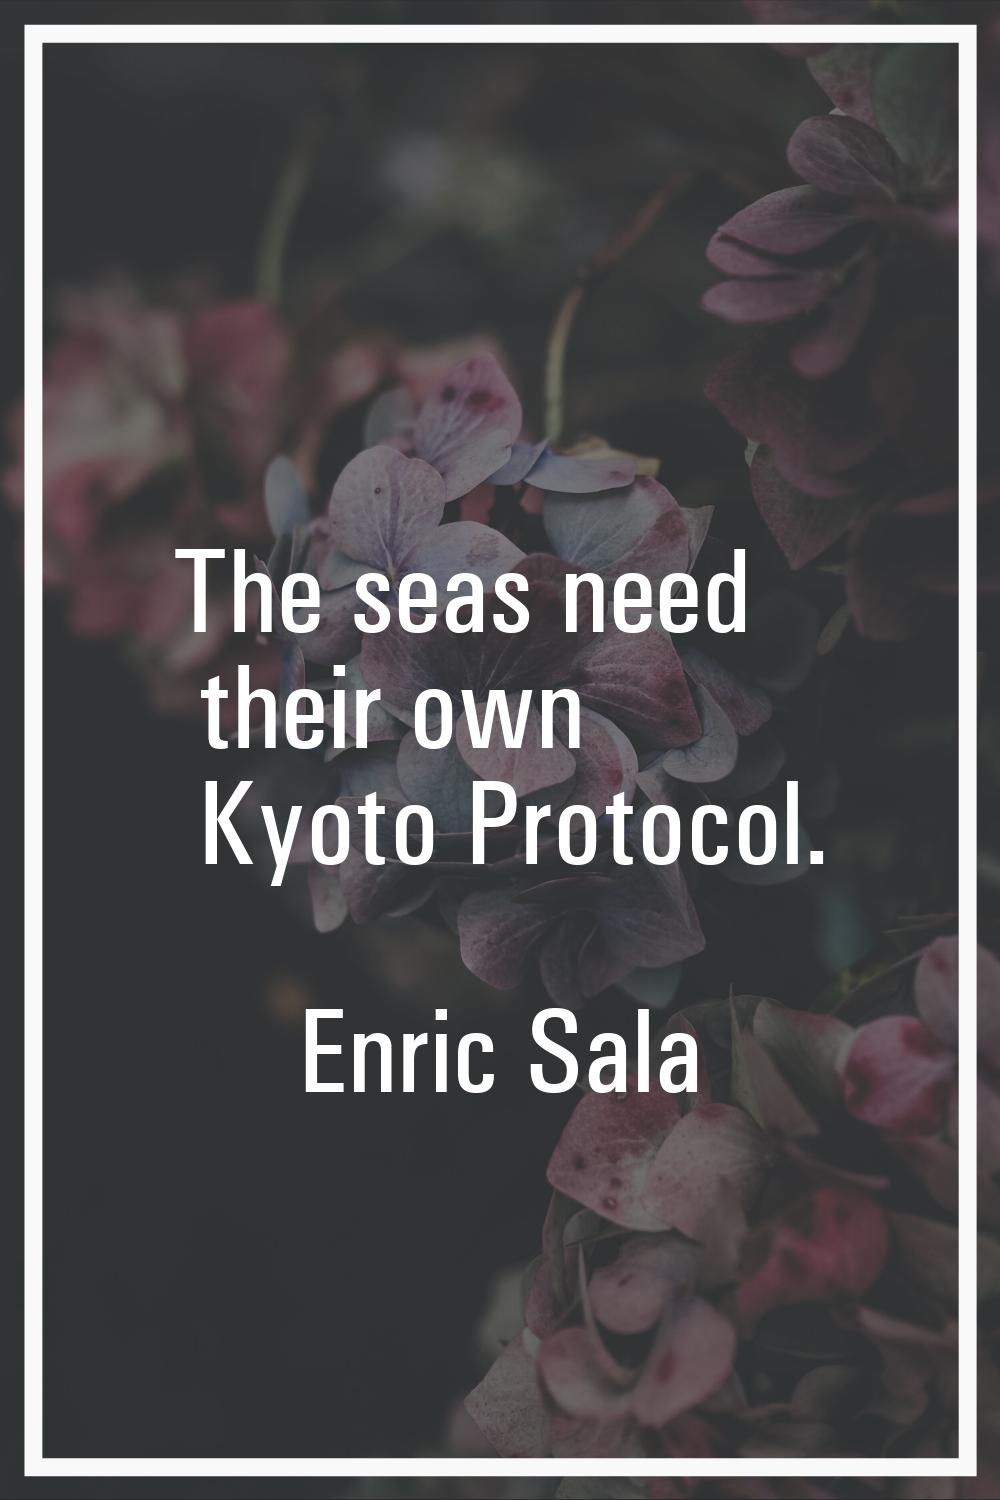 The seas need their own Kyoto Protocol.